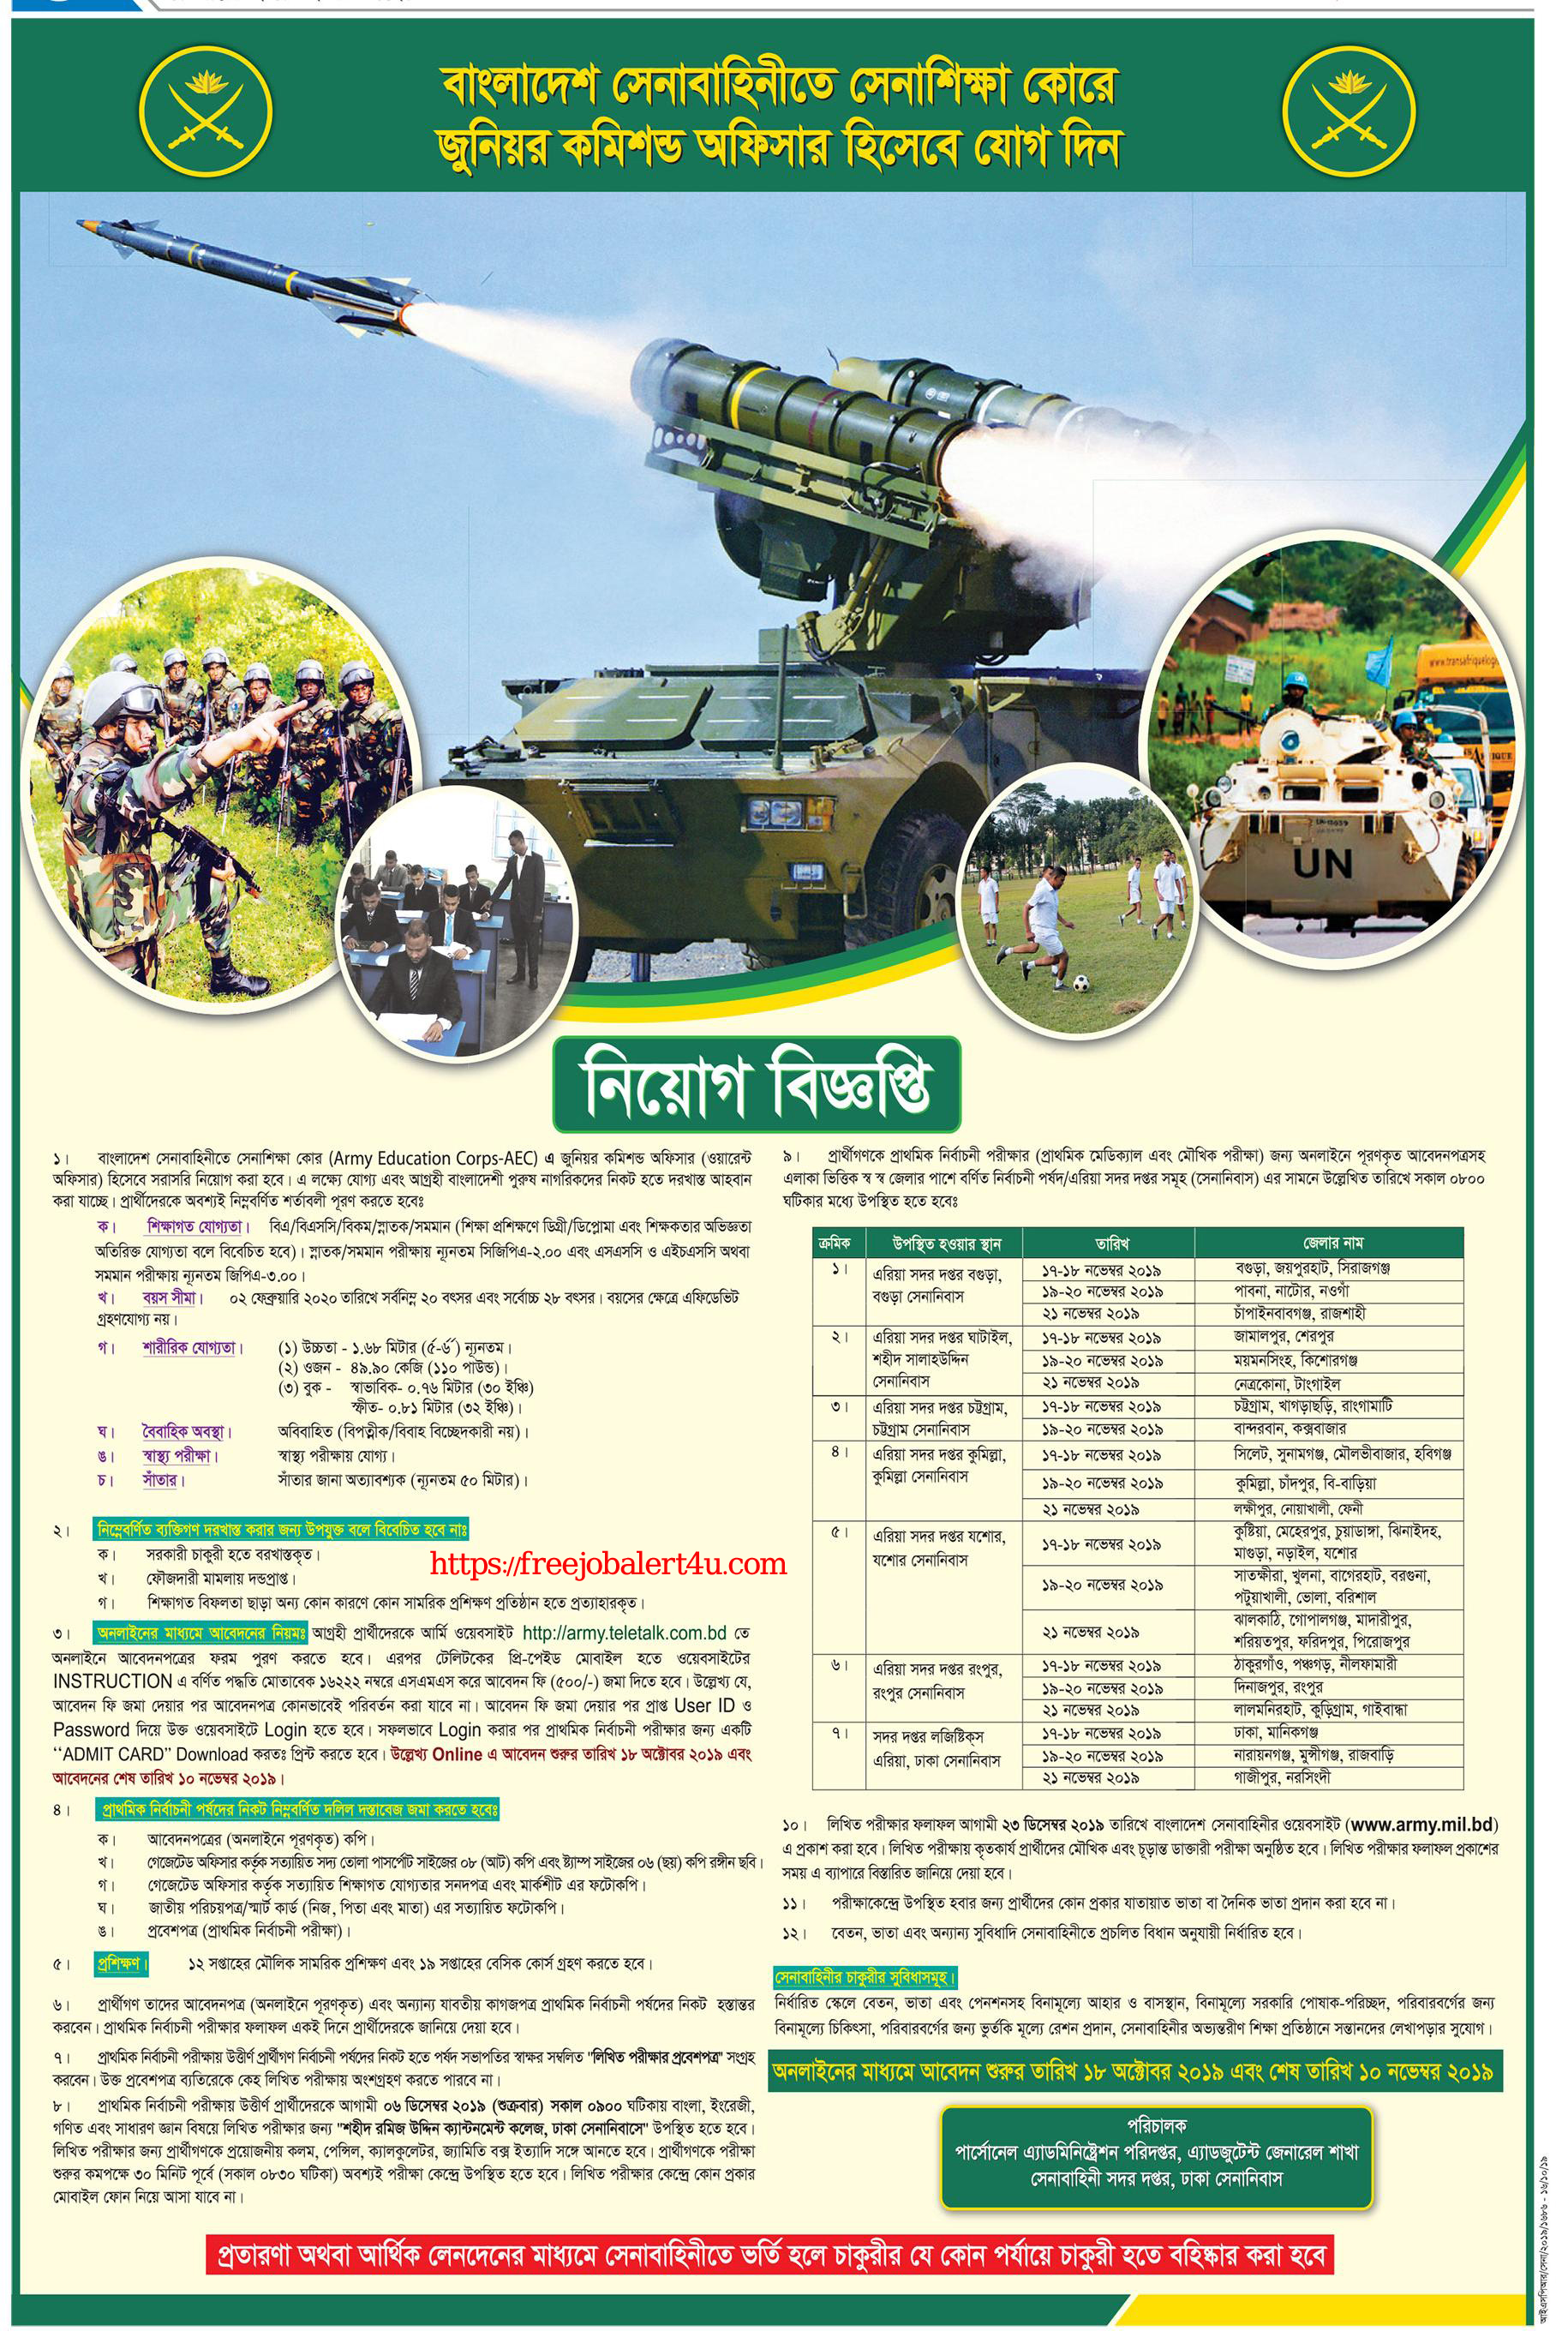 Bangladesh Army Job Circular 2019 - Join Bangladesh Army